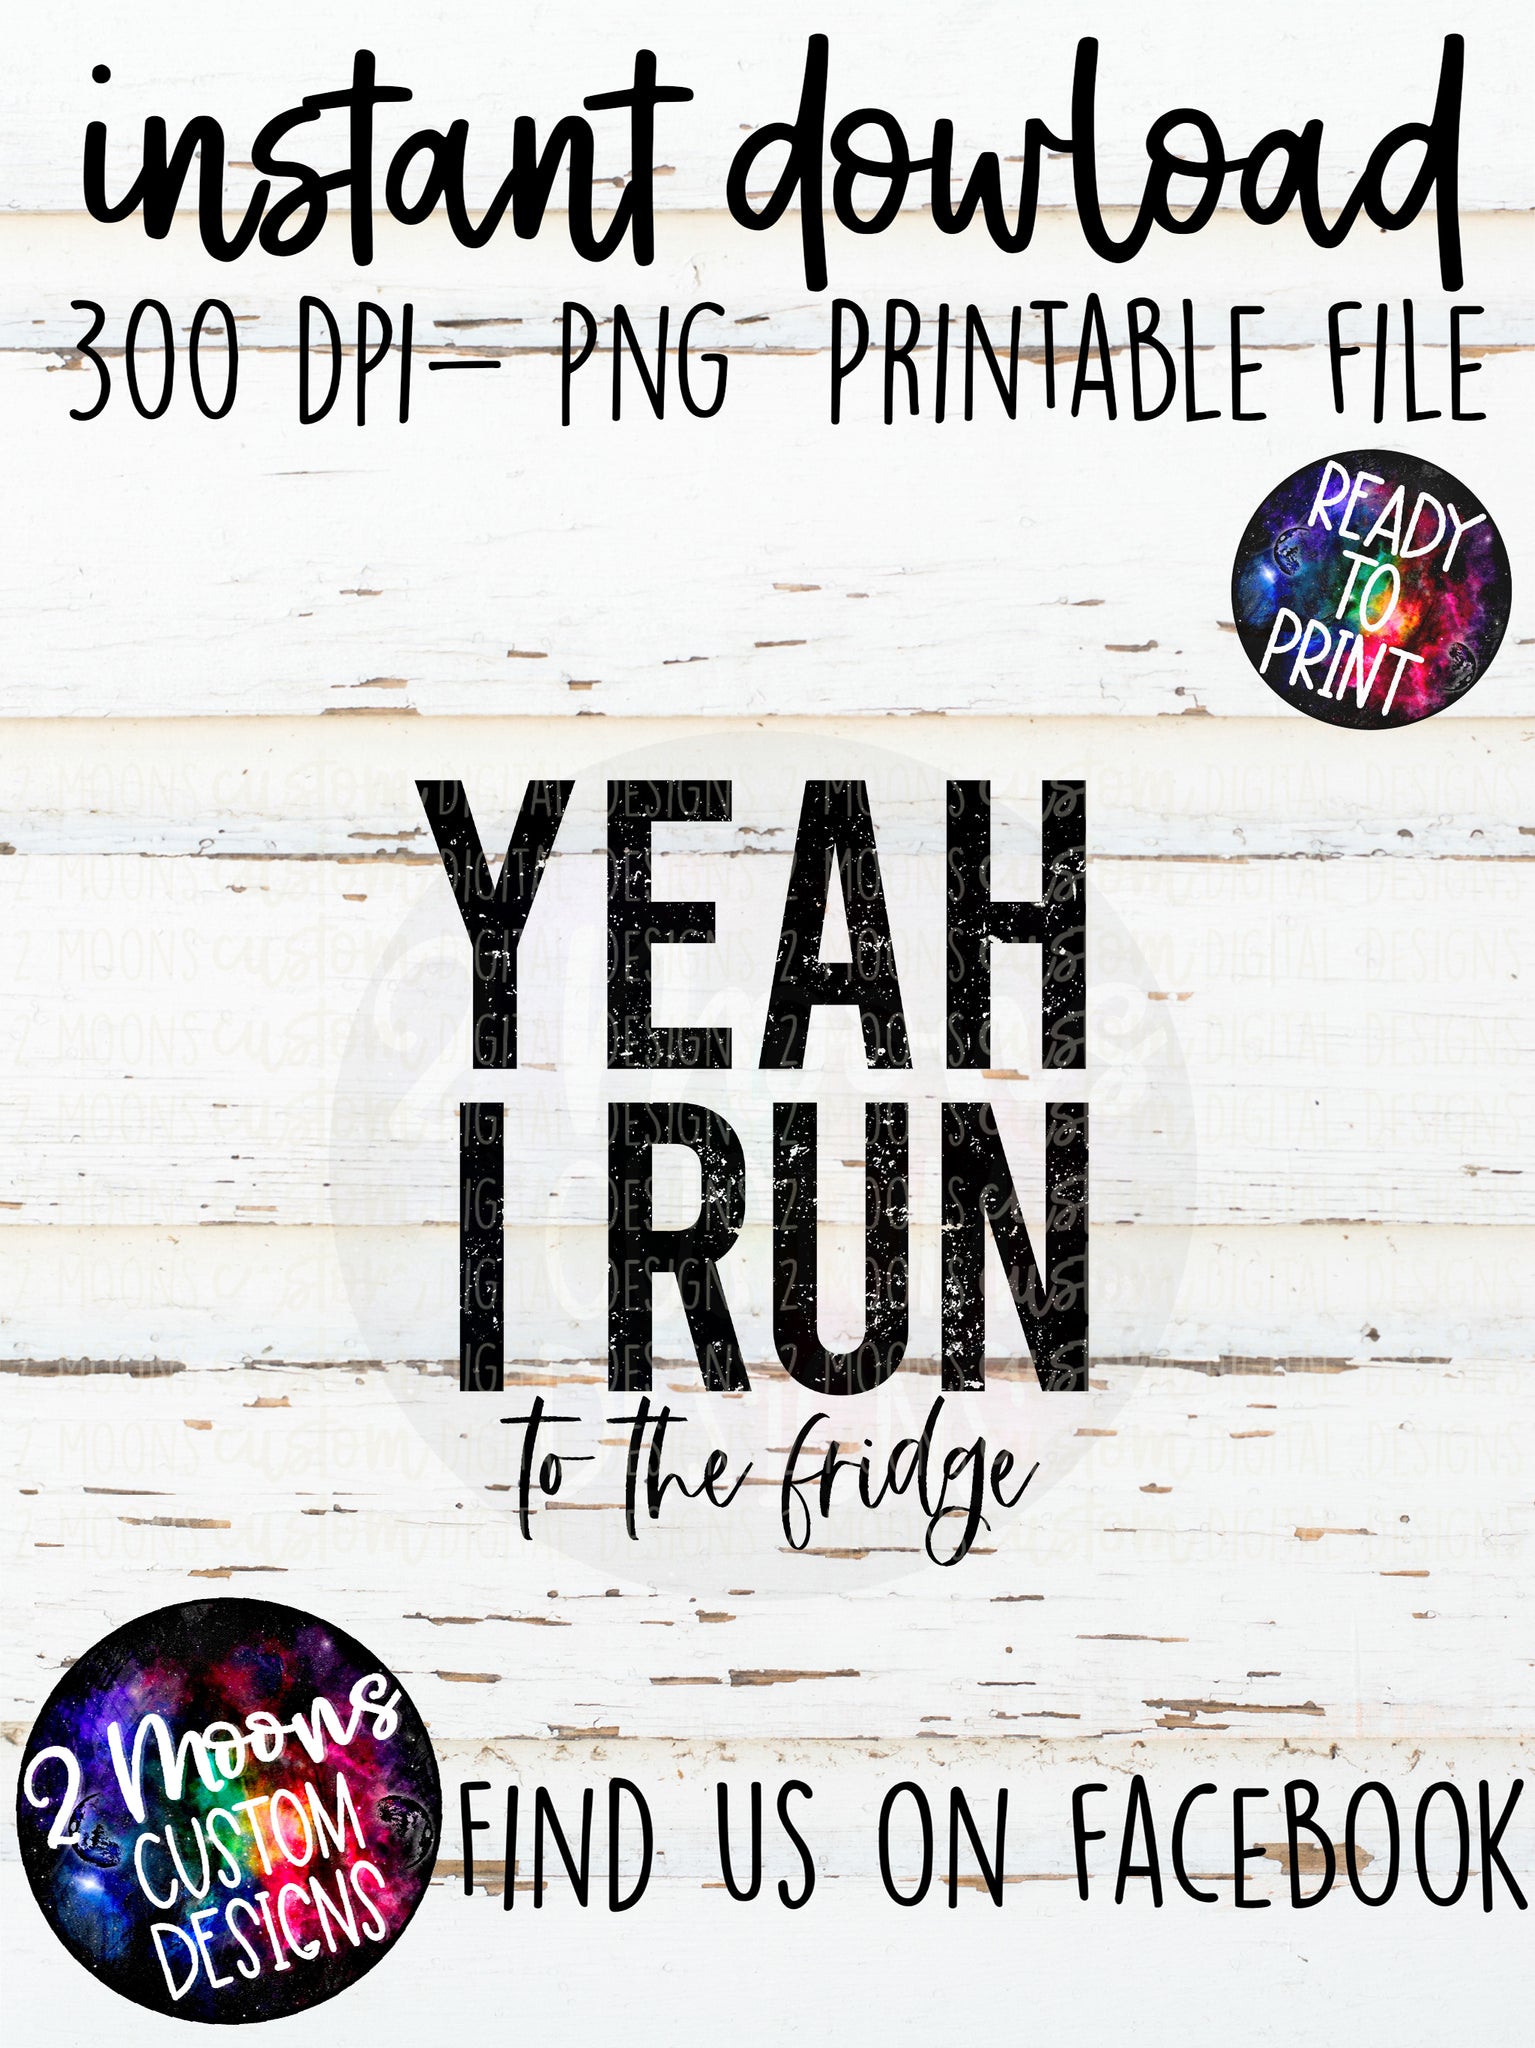 Yeah I run- To the Fridge